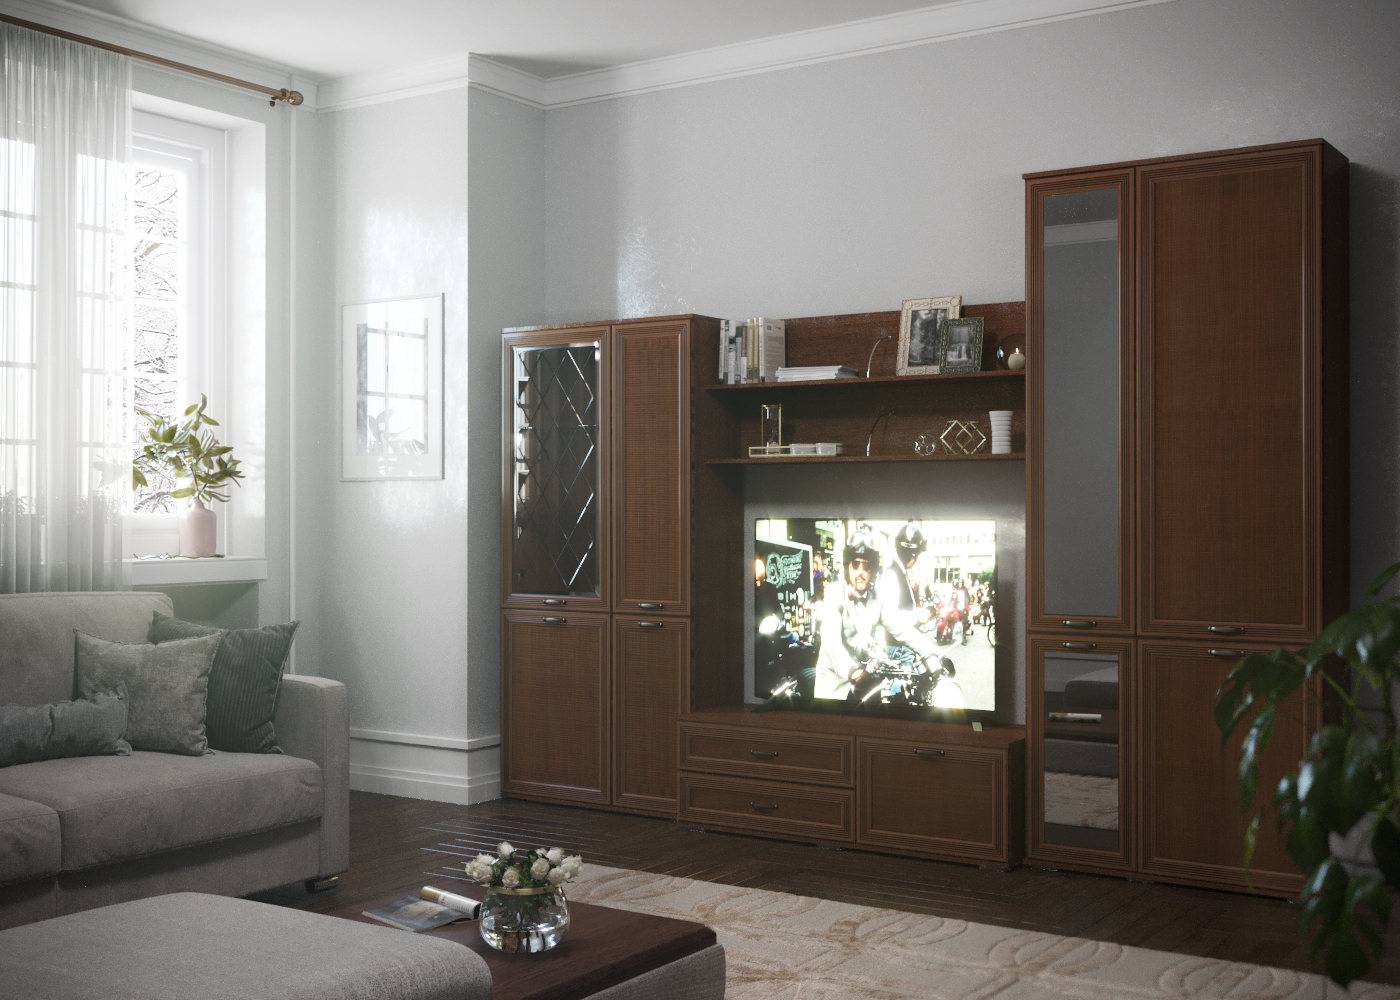 Oturma odası için mobilya tasarımı in 3d max corona render resim